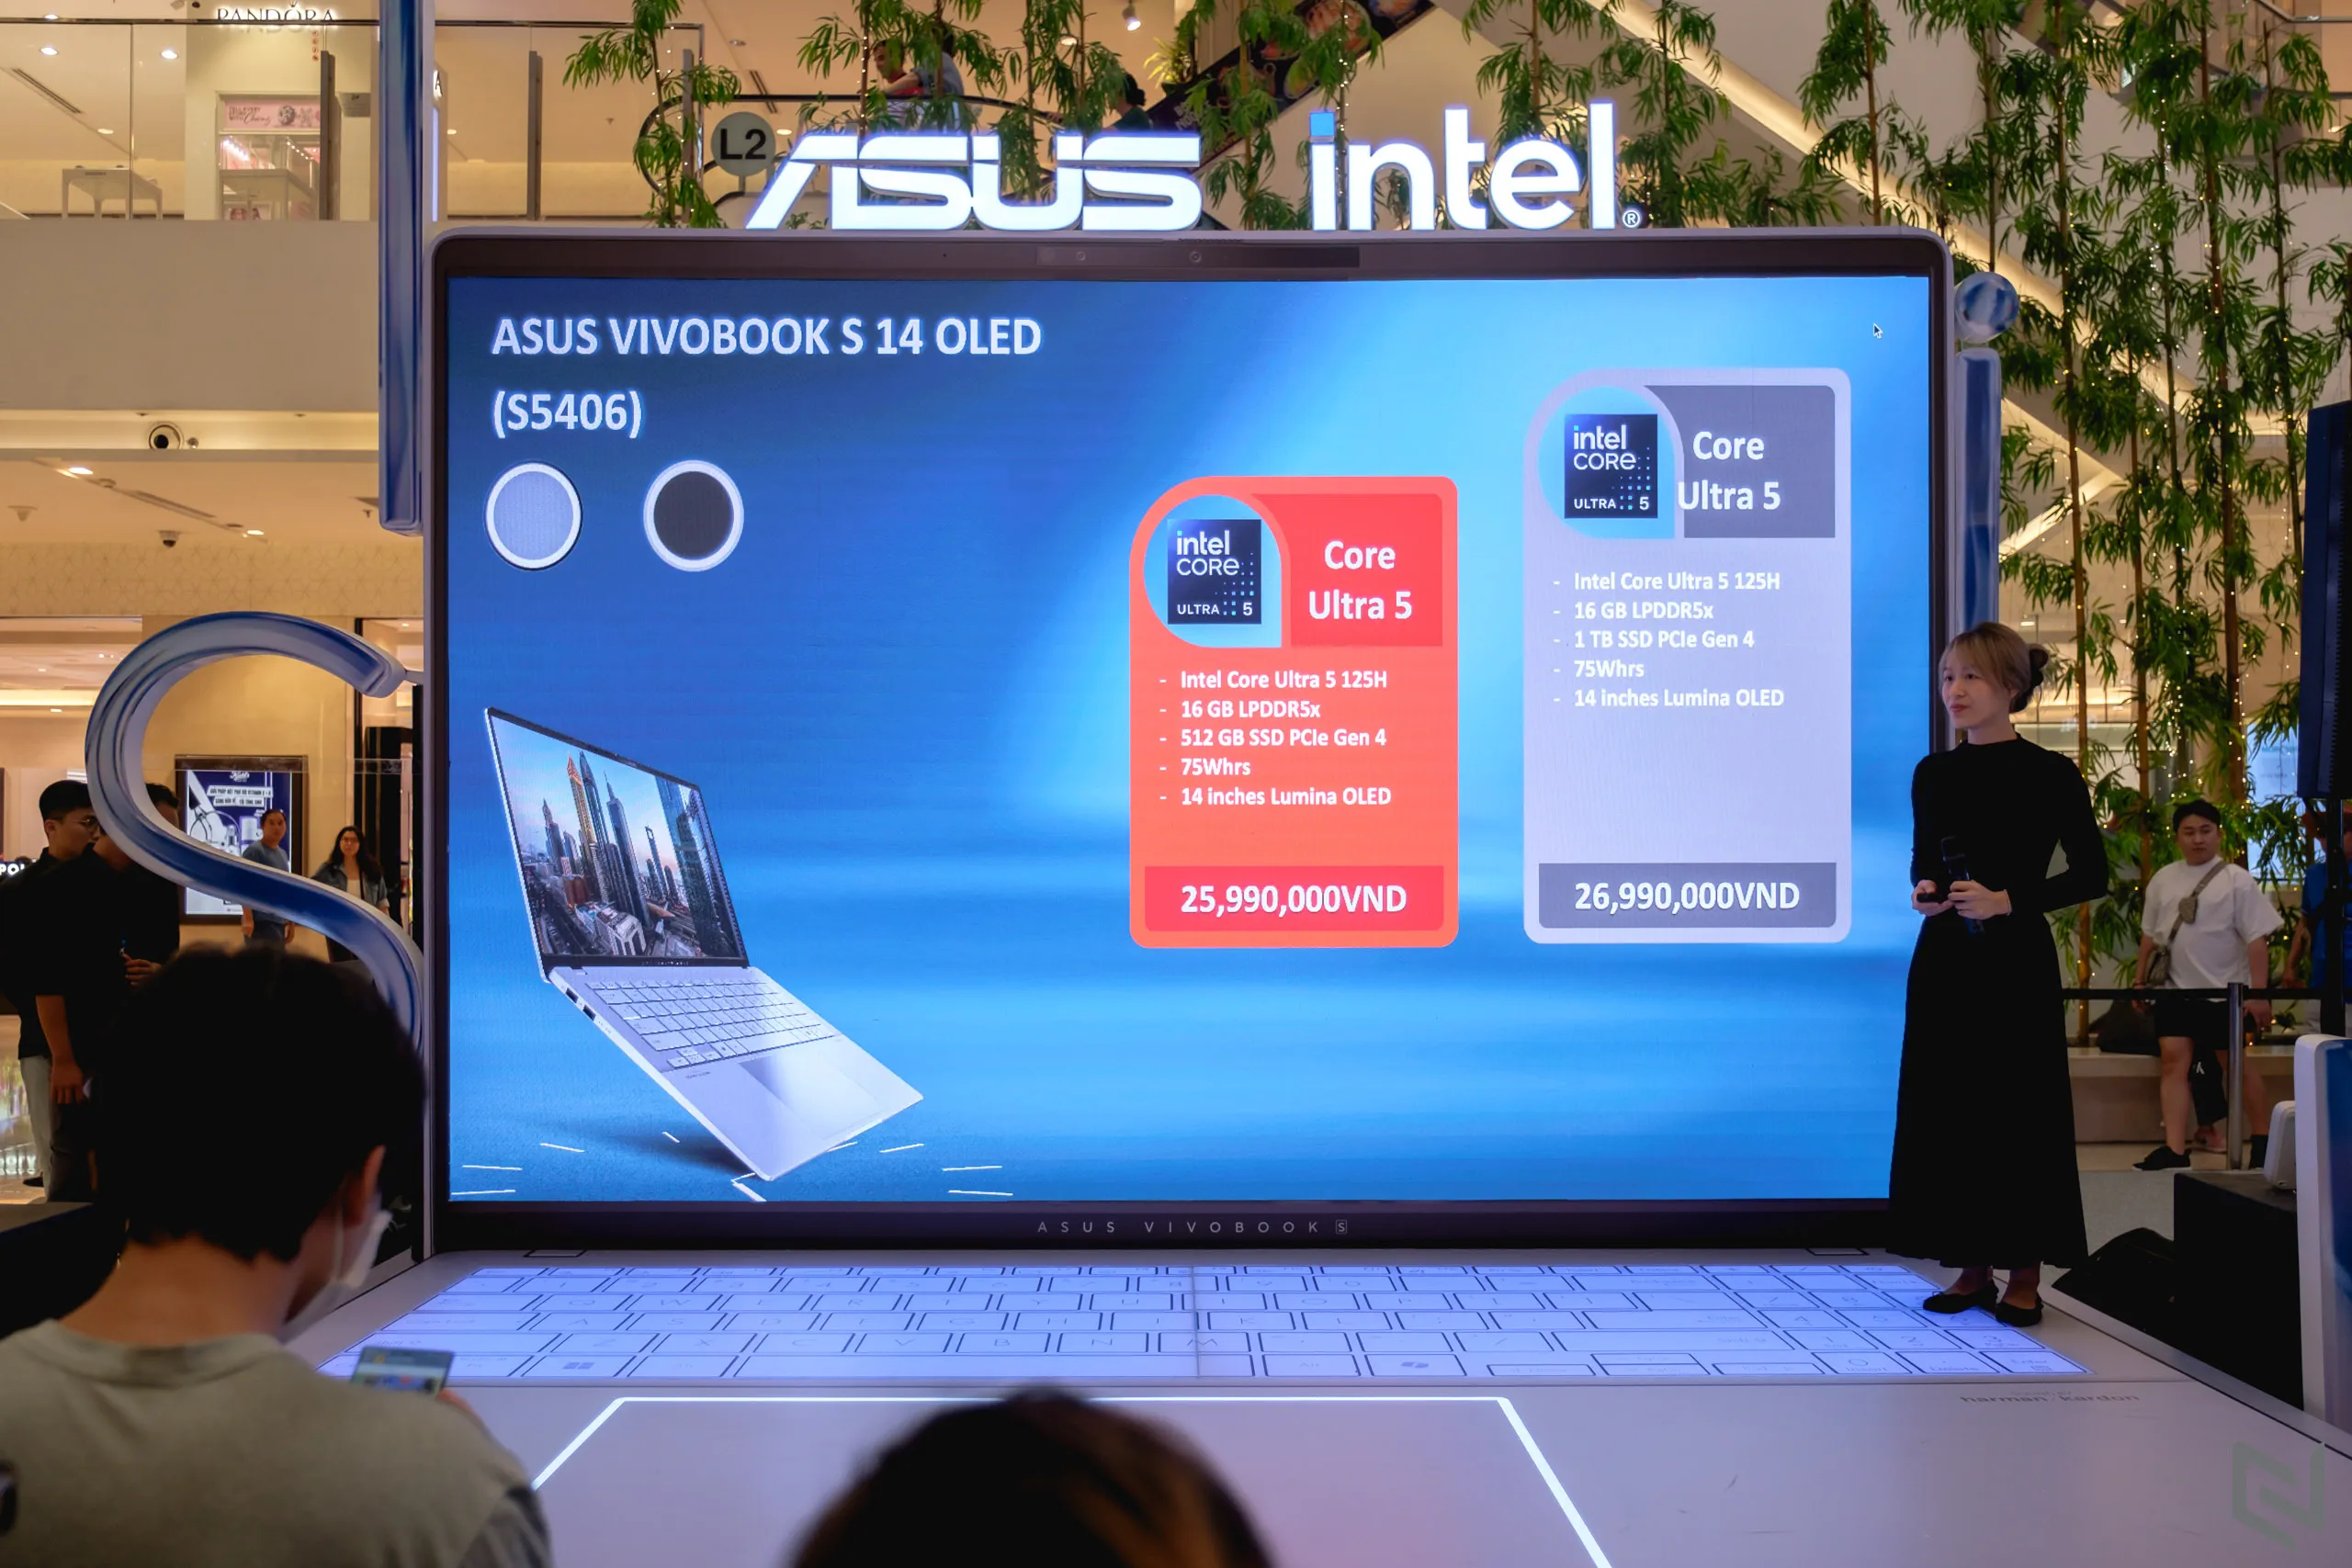 Vivobook S 14/16 OLED: Nâng tầm trải nghiệm di động với màn hình OLED, chip AI